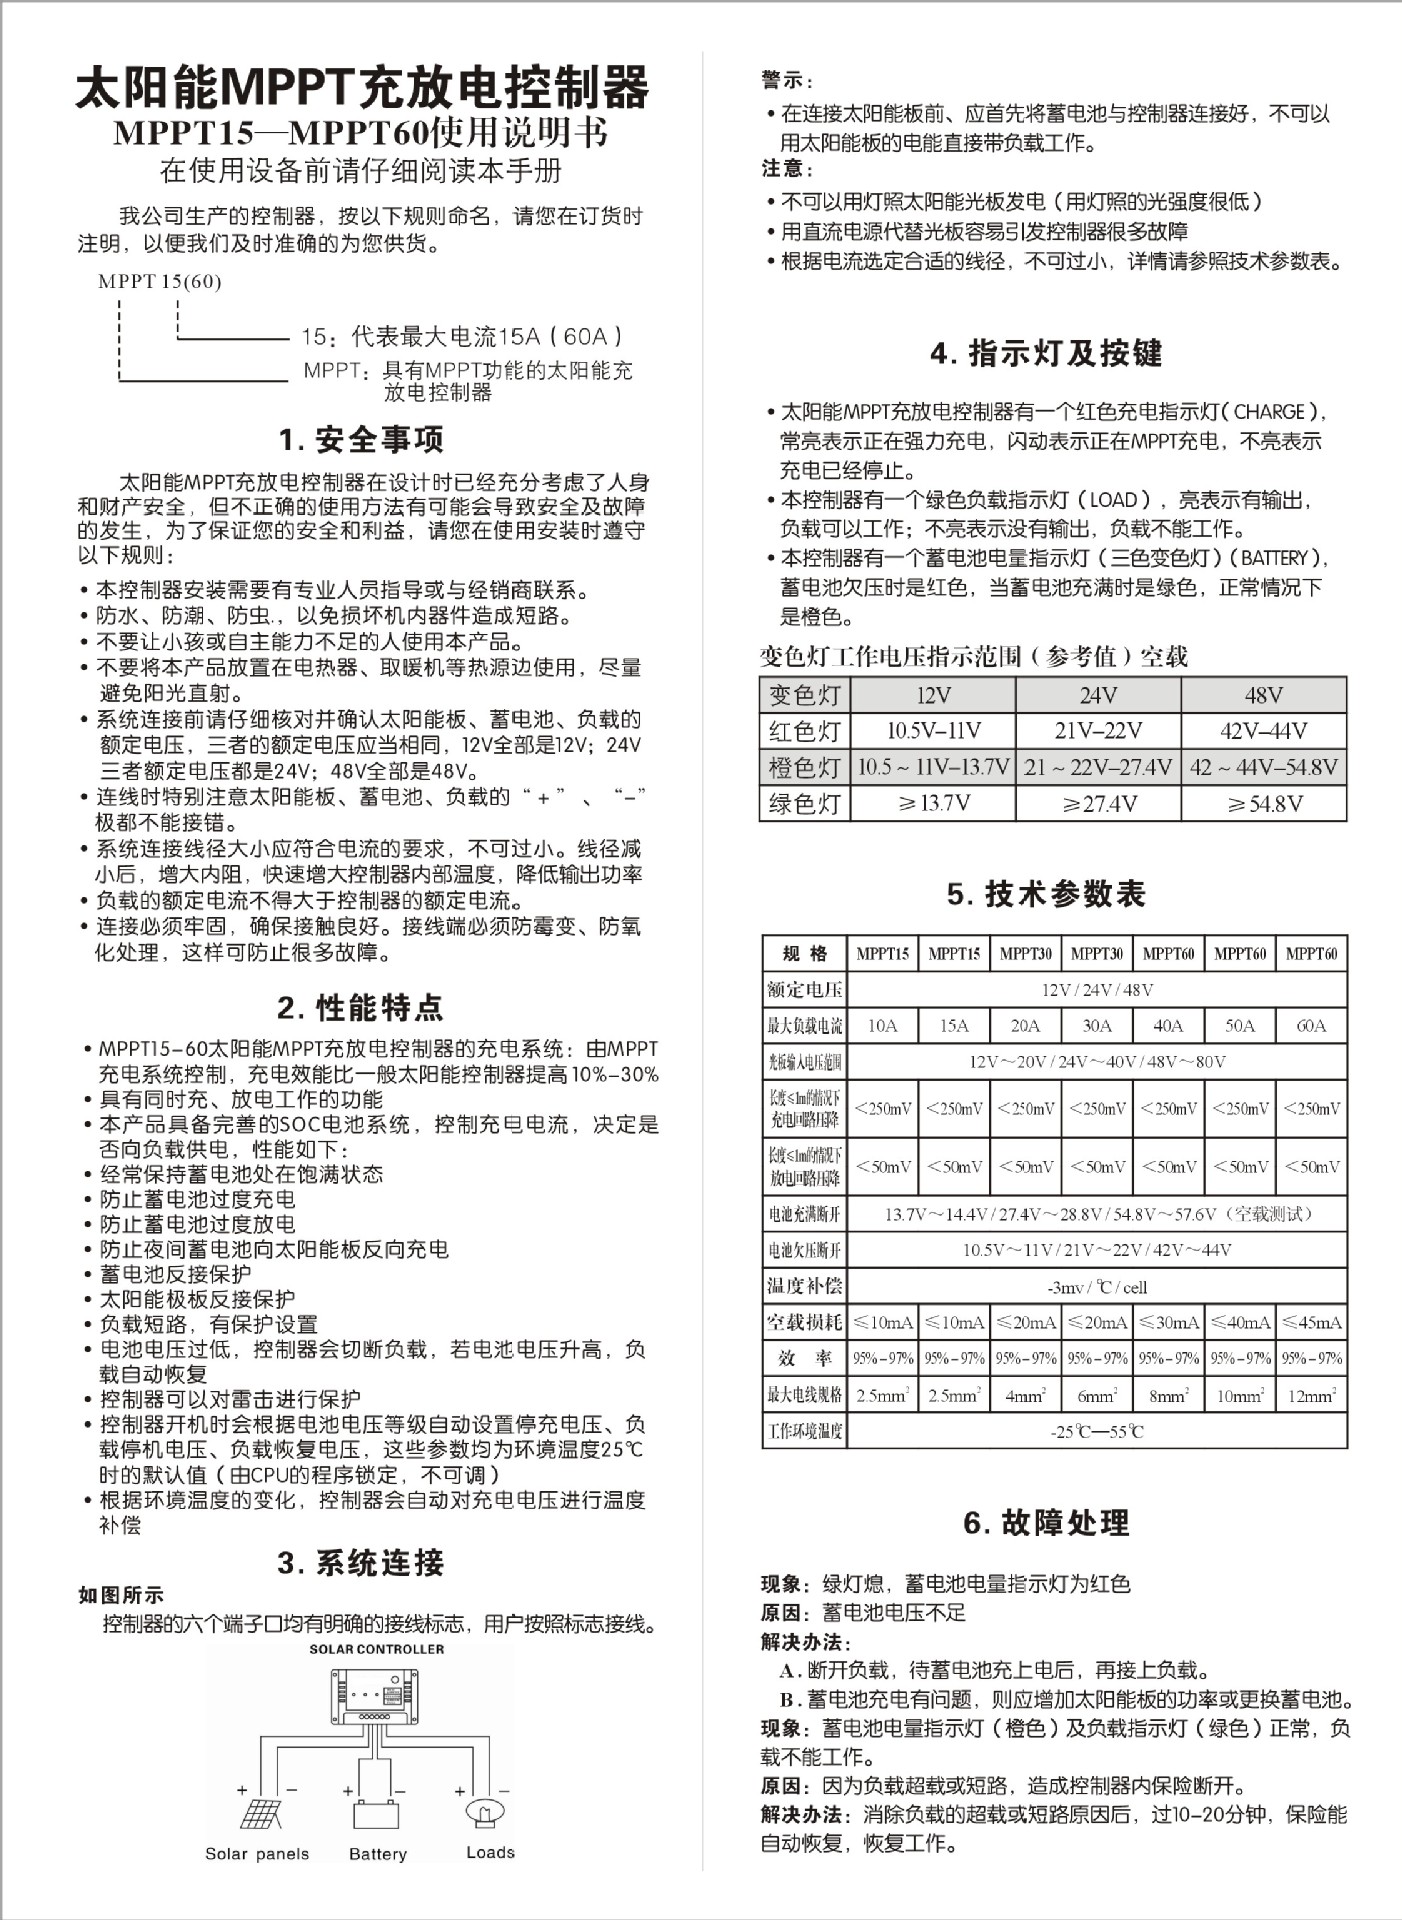 太陽能MPPT充放電控制器 說明書 中文